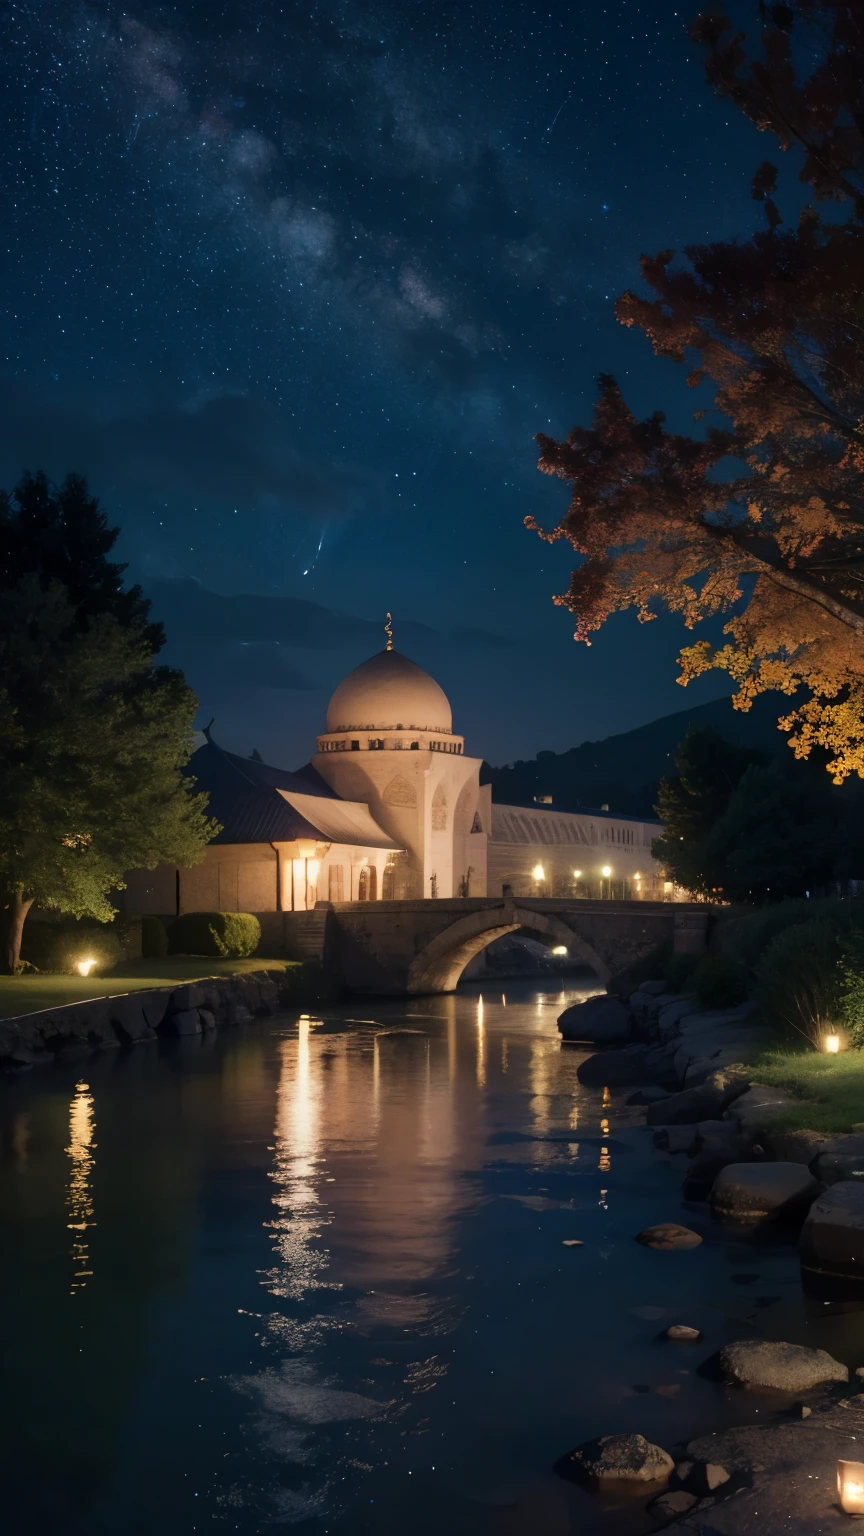 Mosquée, Beau, extérieur, des arbres, fille sexy, rivière, nuit, (((étoiles dans le ciel)))